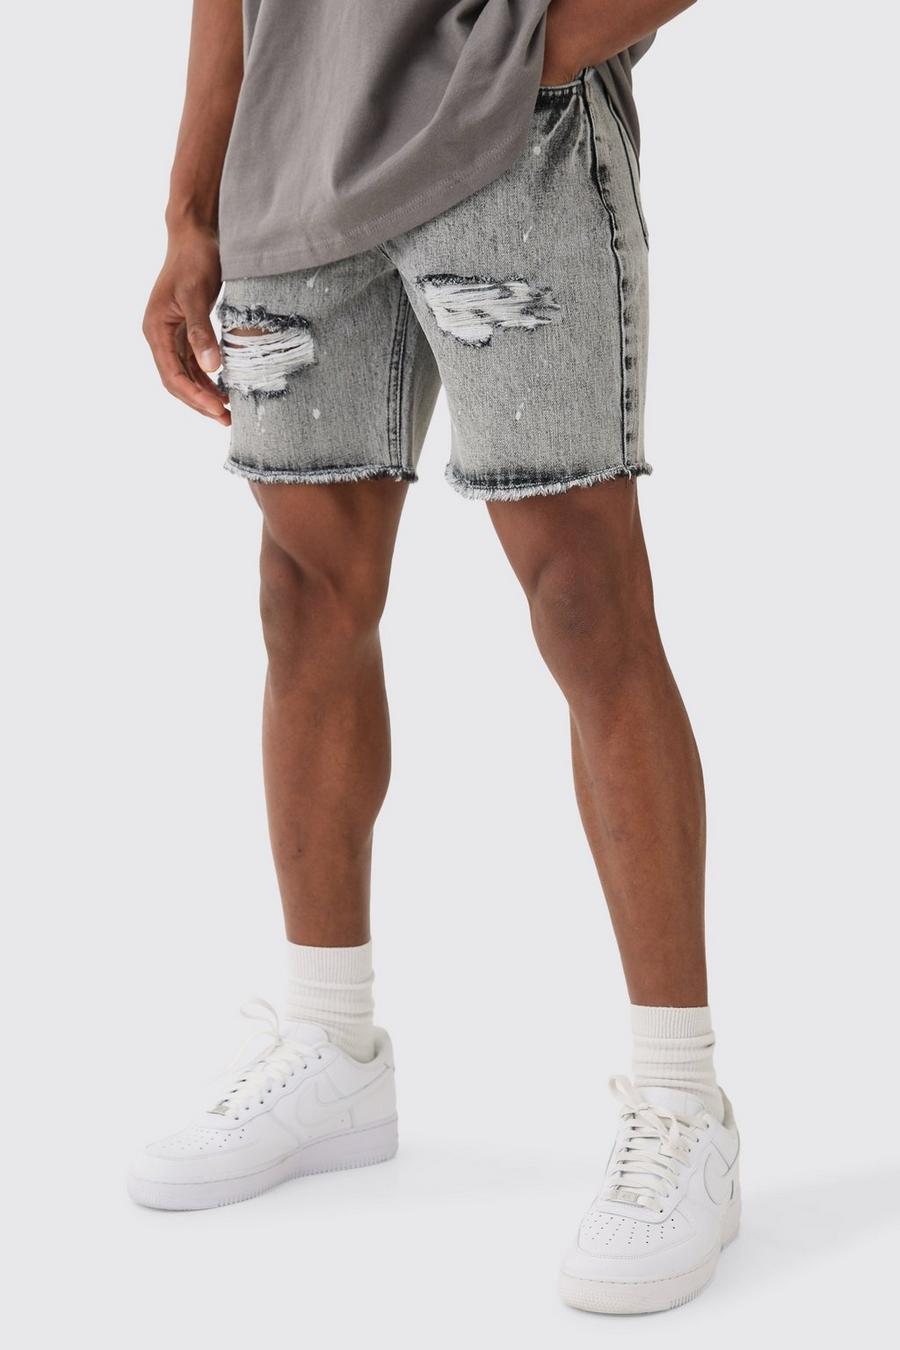 Pantalones cortos vaqueros ajustados sin tratar rotos con salpicaduras de pintura en gris hielo, Ice grey image number 1